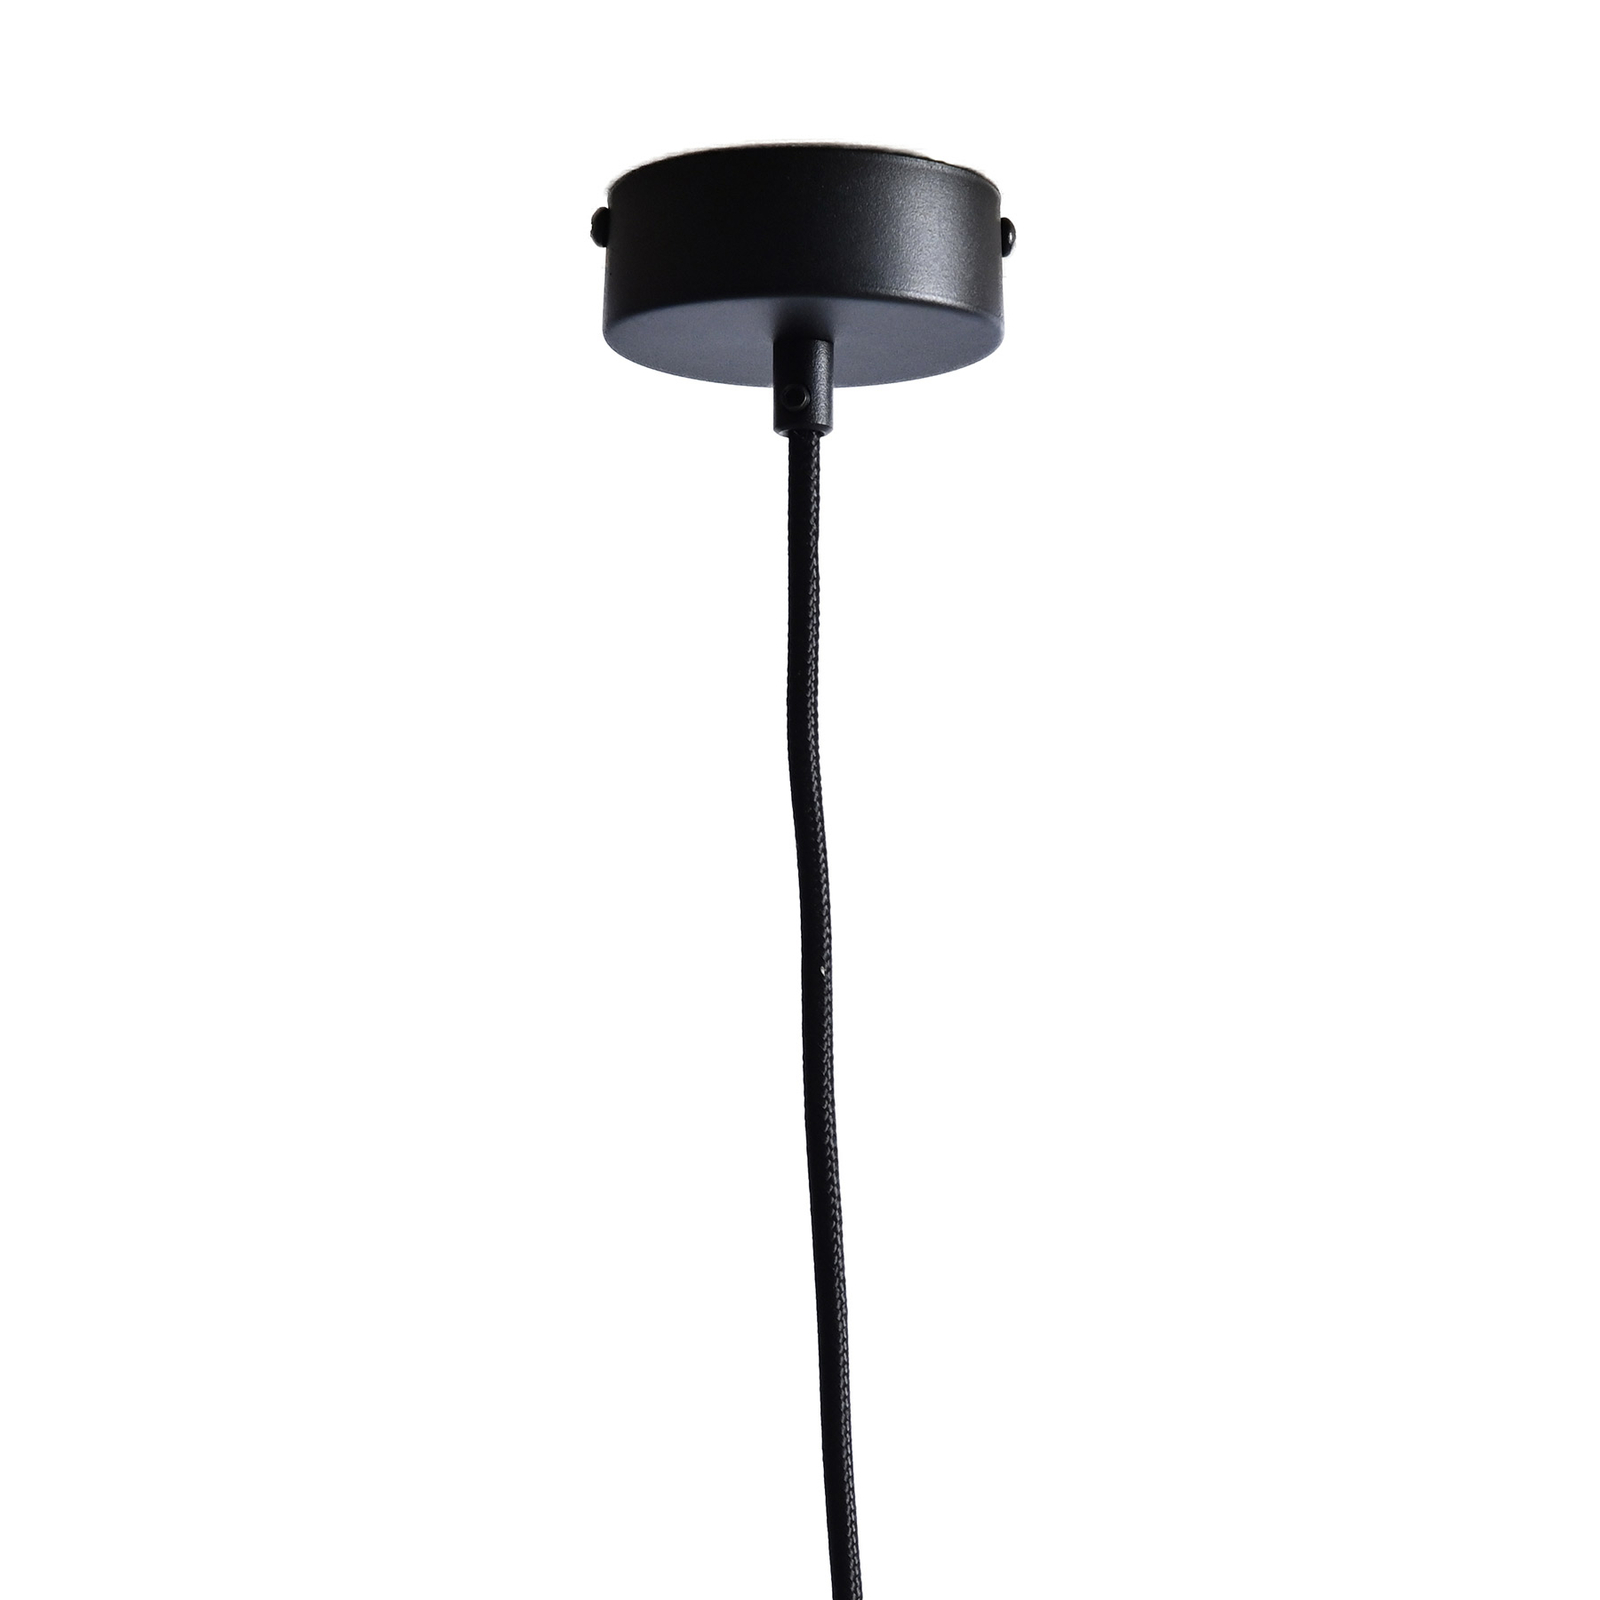 LeuchtNatur Nux hanglamp hooi/alpenweide, zwart